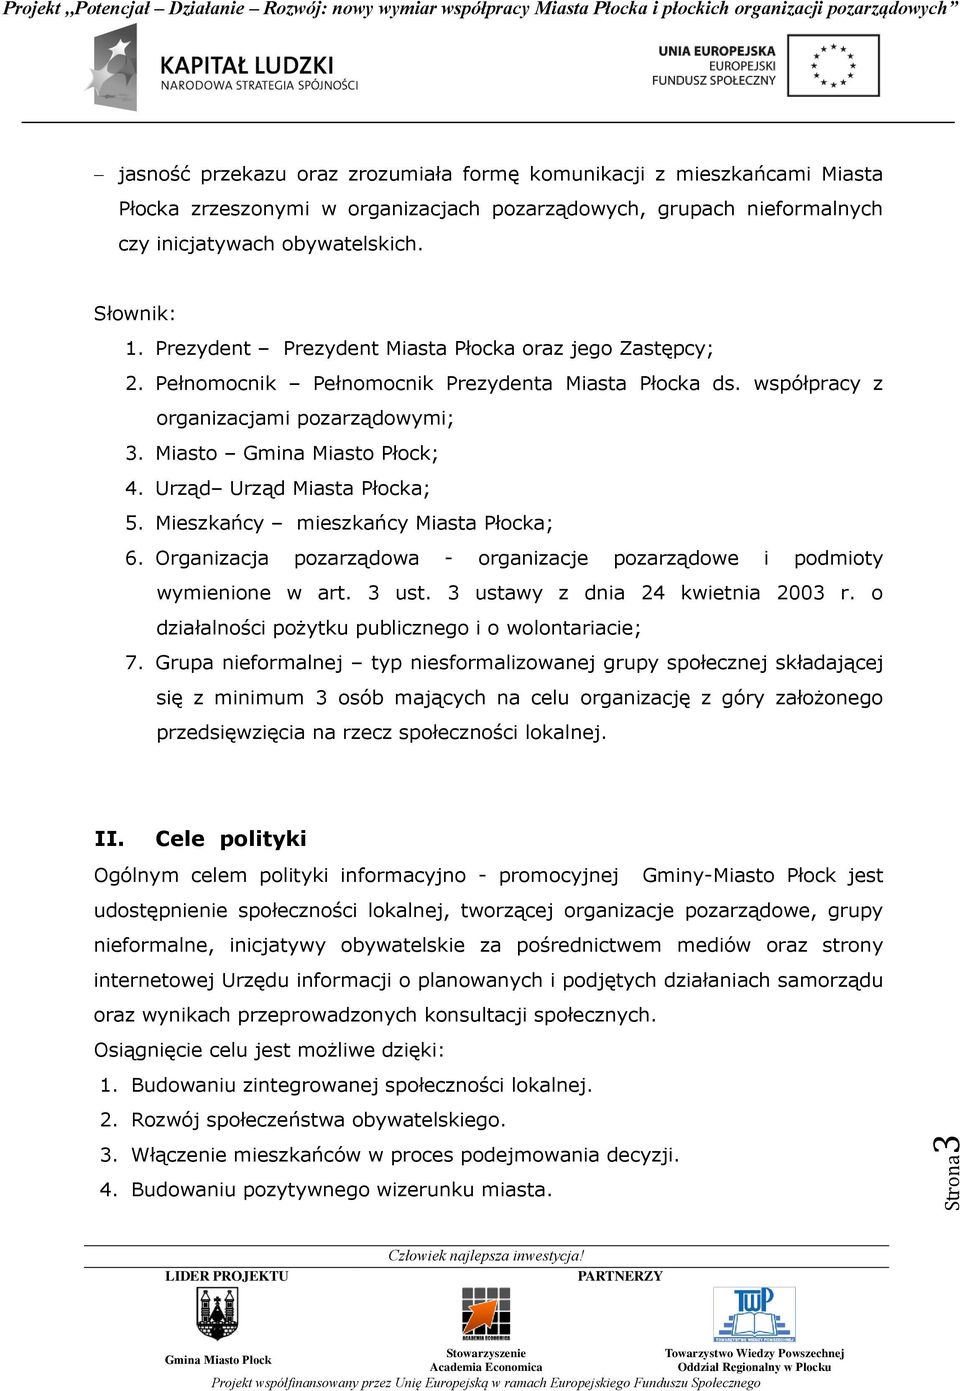 Mieszkańcy mieszkańcy Miasta Płocka; 6. Organizacja pozarządowa - organizacje pozarządowe i podmioty wymienione w art. 3 ust. 3 ustawy z dnia 24 kwietnia 2003 r.